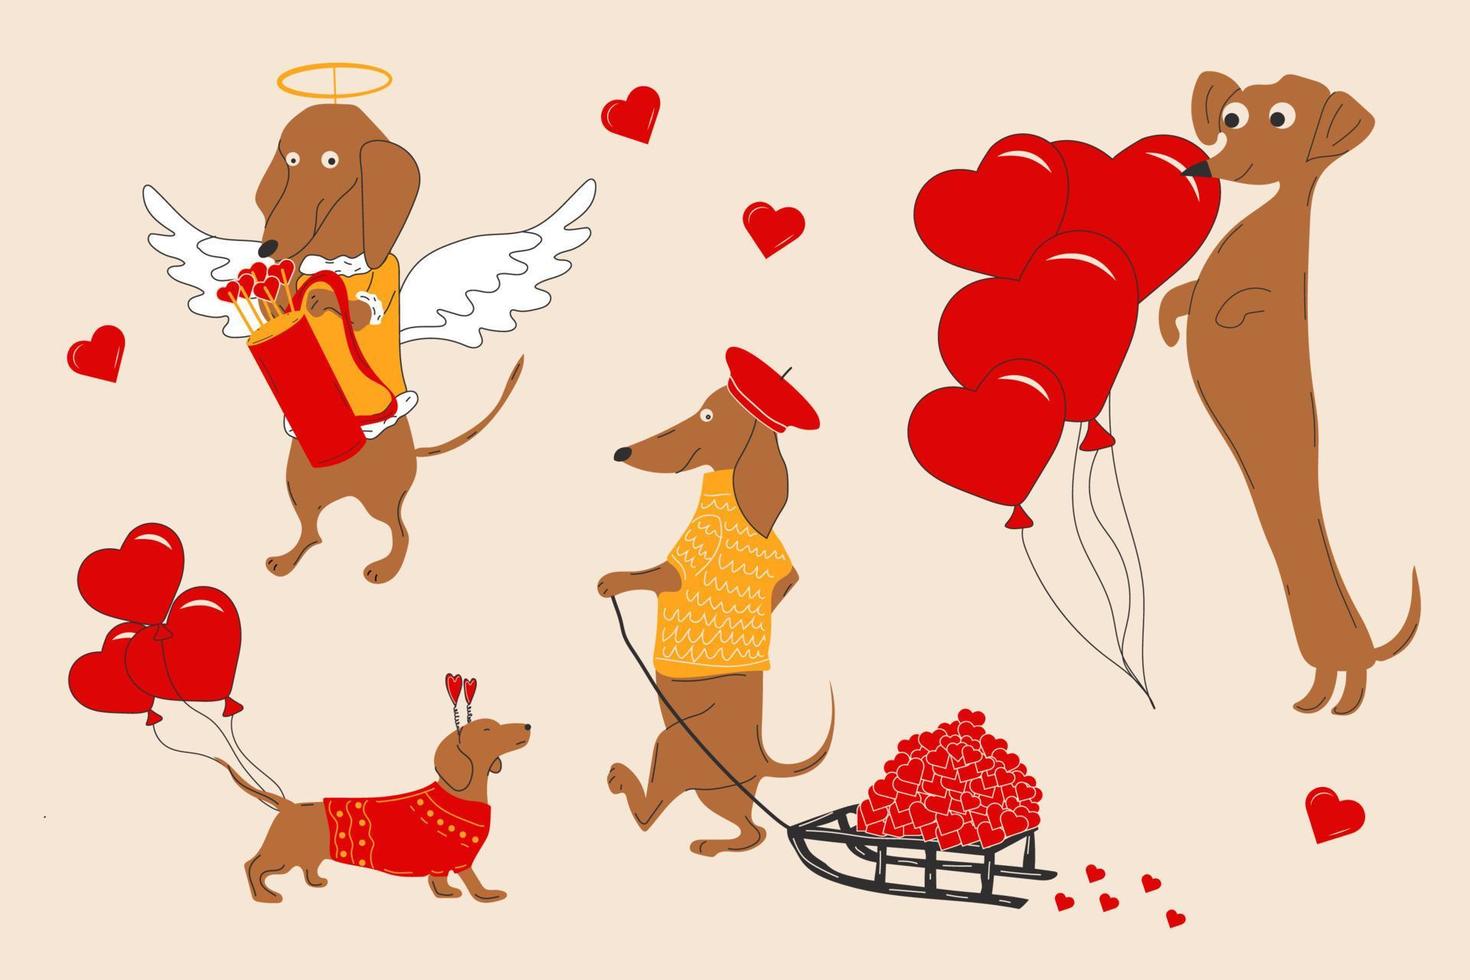 cachorros dachshunds puxam corações, namorados em um trenó e decoram balões em forma de coração. ilustração vetorial vetor